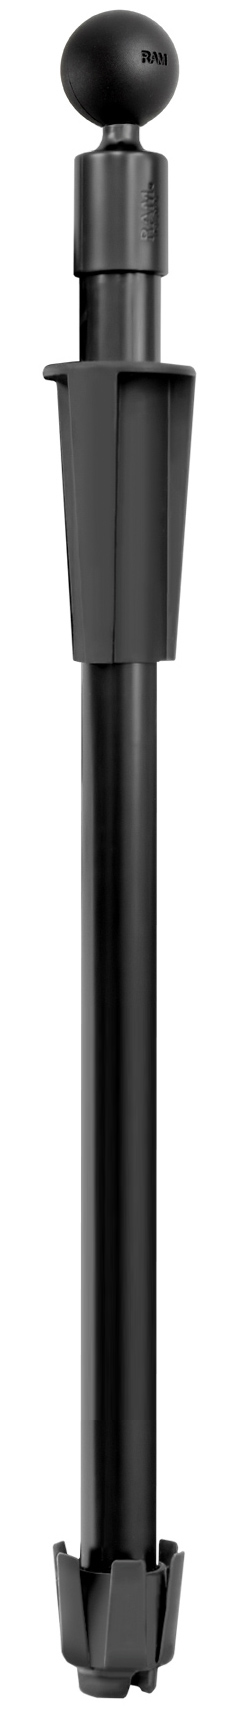 RAP-385-18U Press-N-Lock C-Kugel-Basis mit 45,72cm (18 Zoll) langem Stab 0